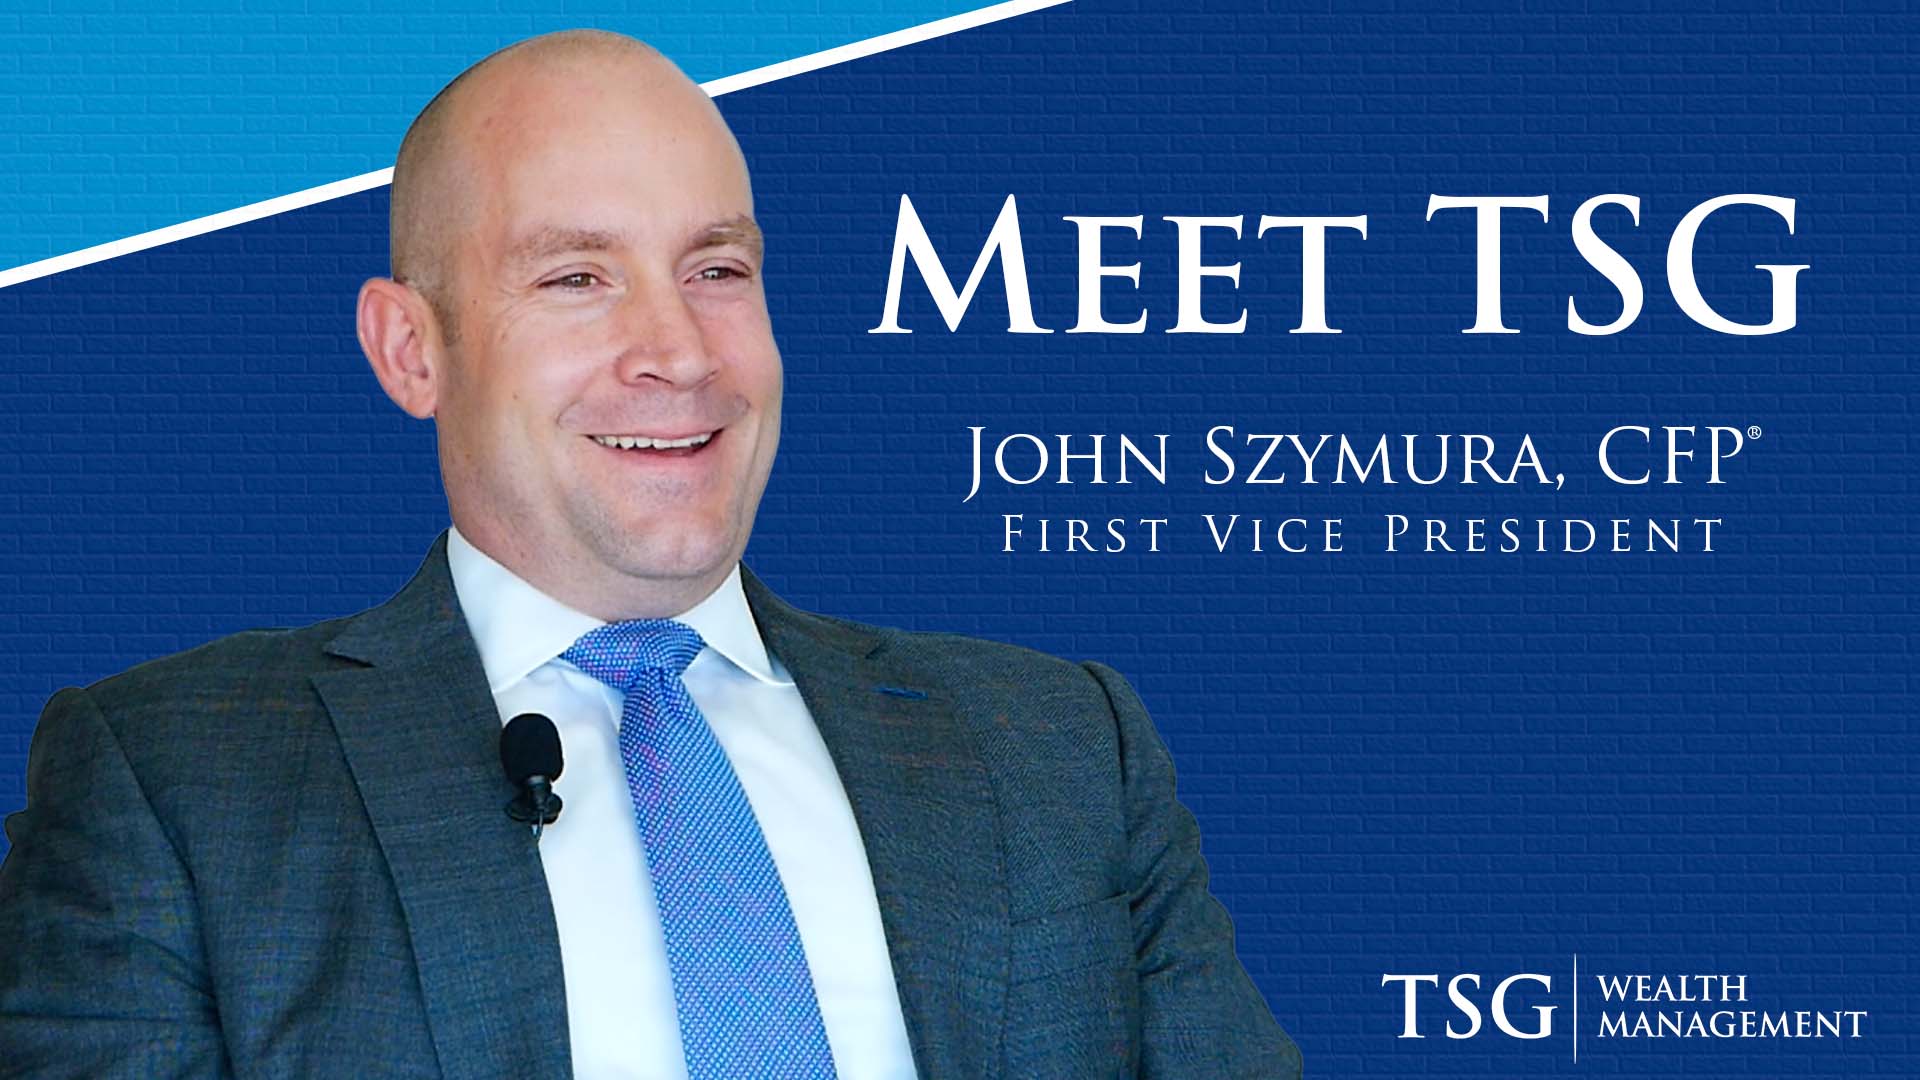 Meet John Szymura, TSG's First Vice President